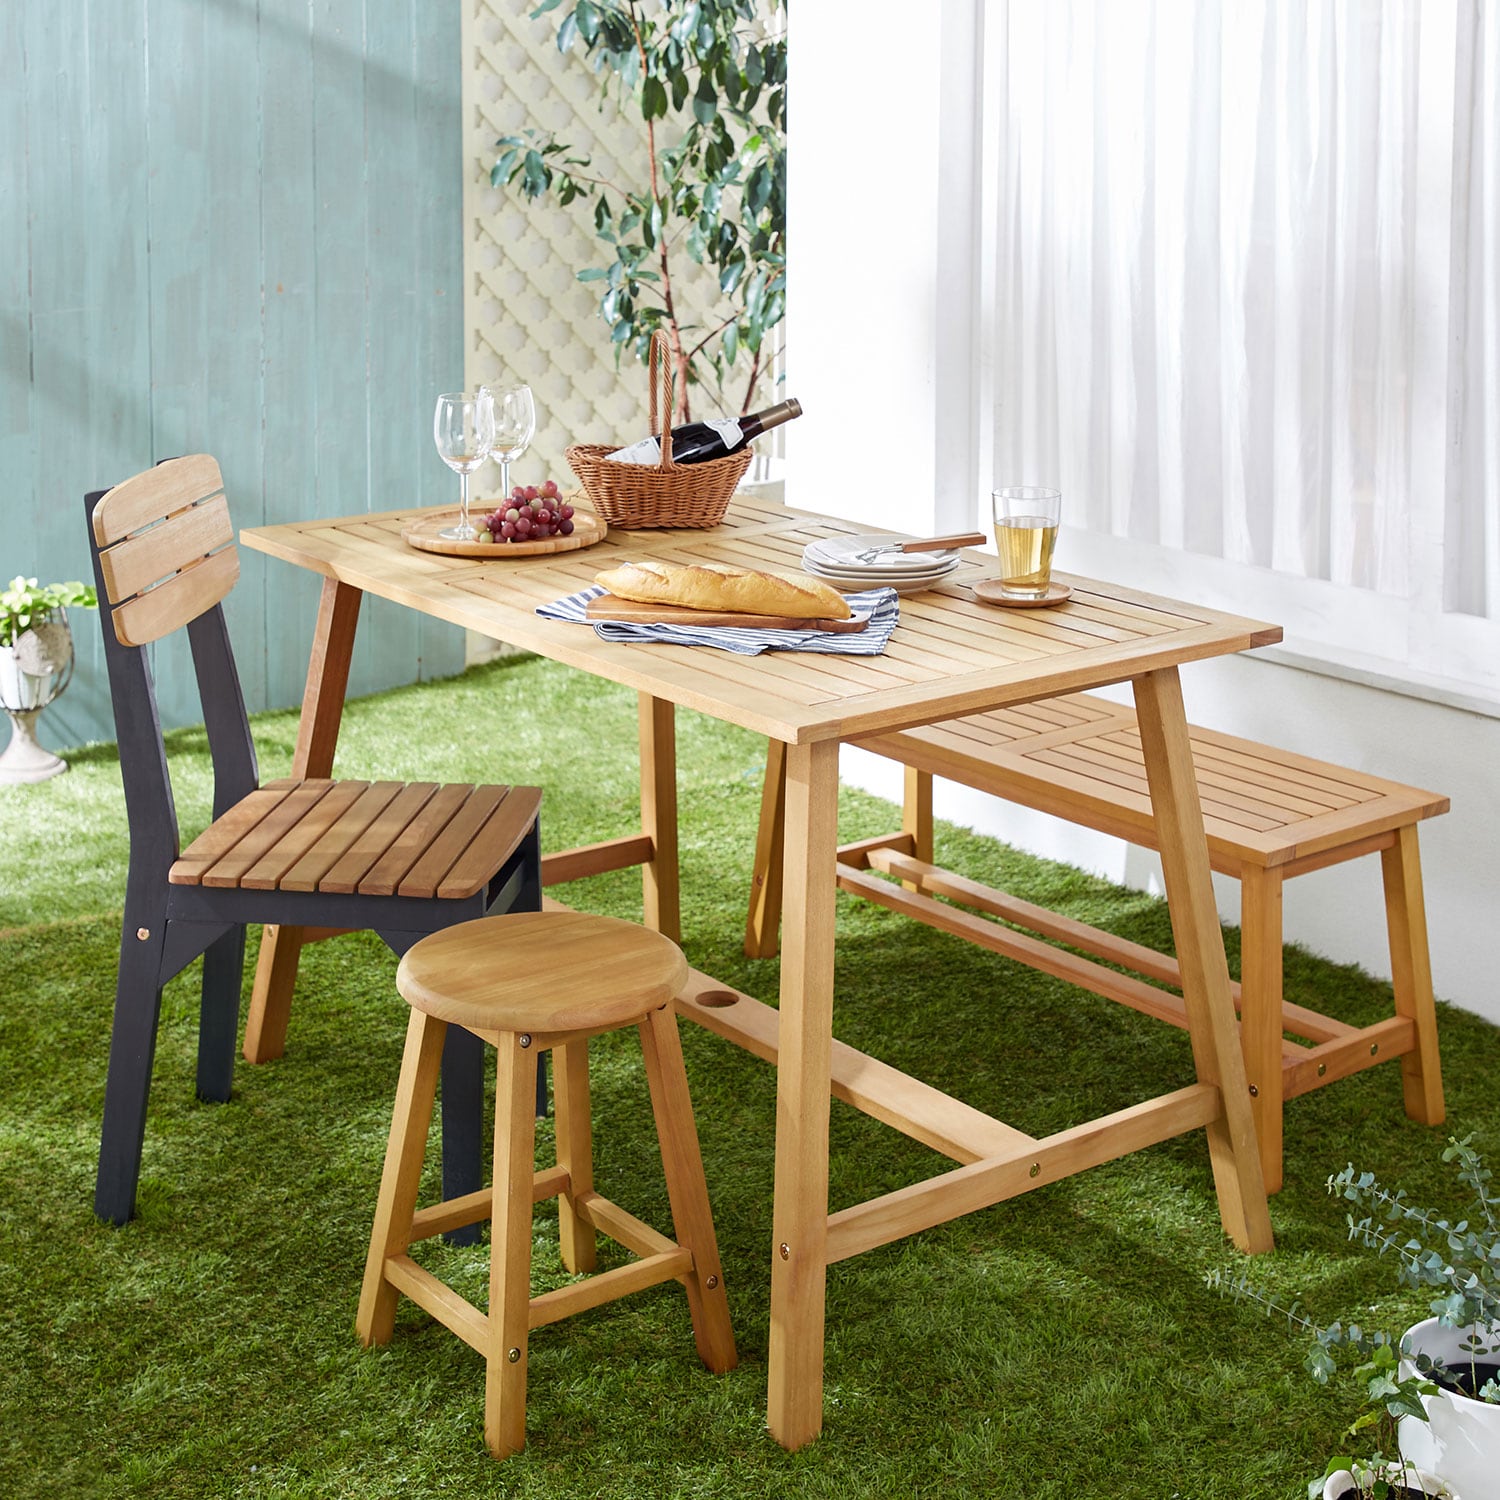 高級感のある屋外テーブル②『ベルメゾン 天然木のガーデンテーブル』